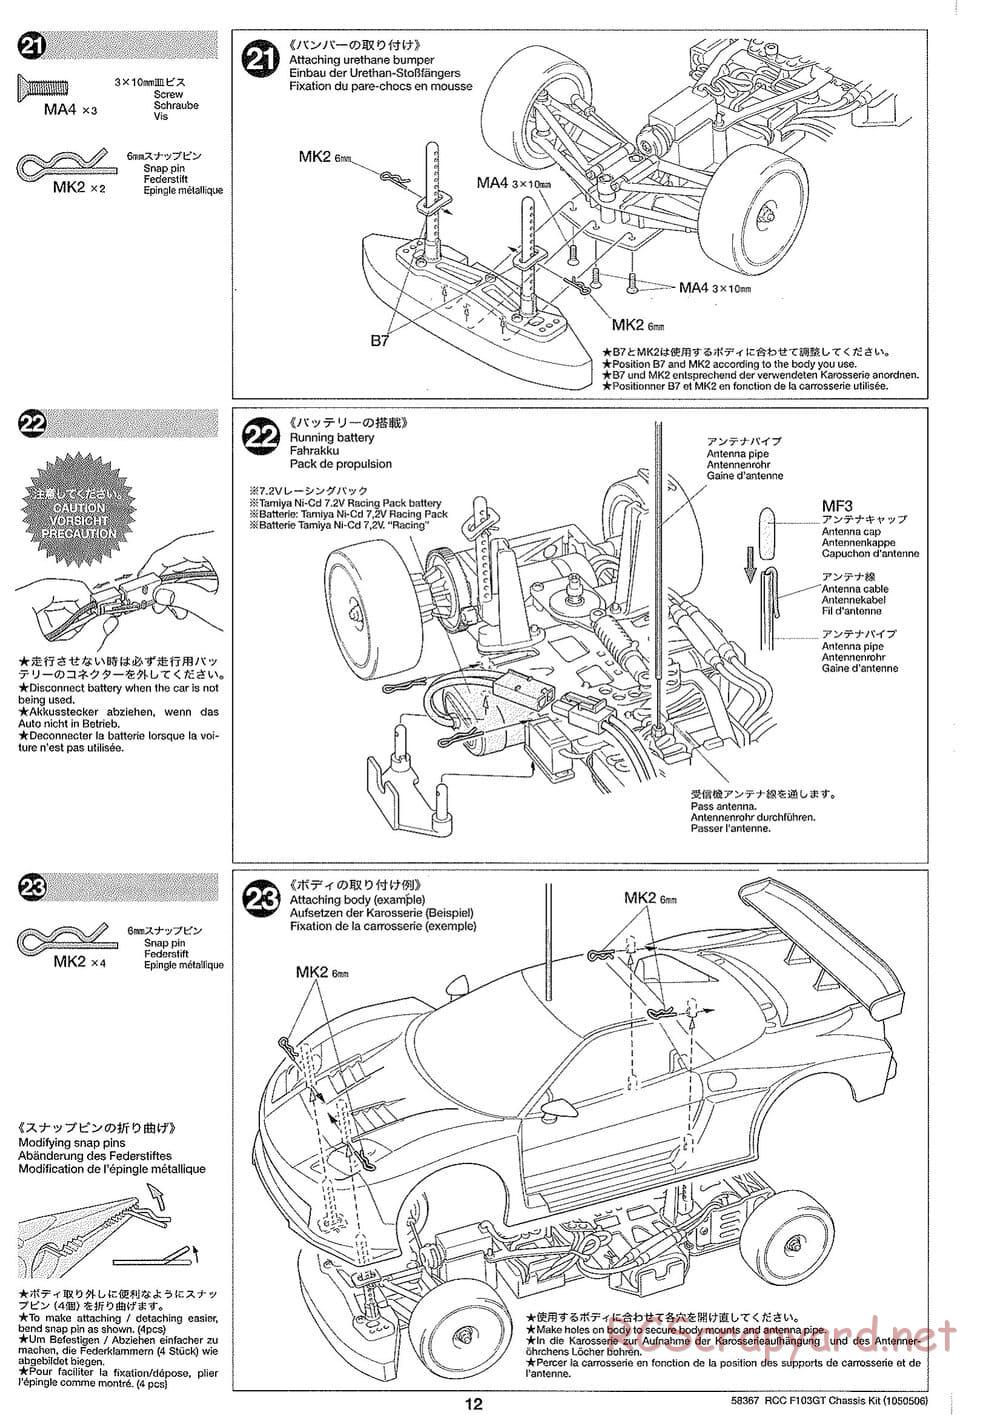 Tamiya - F103GT Chassis Kit - Manual - Page 12